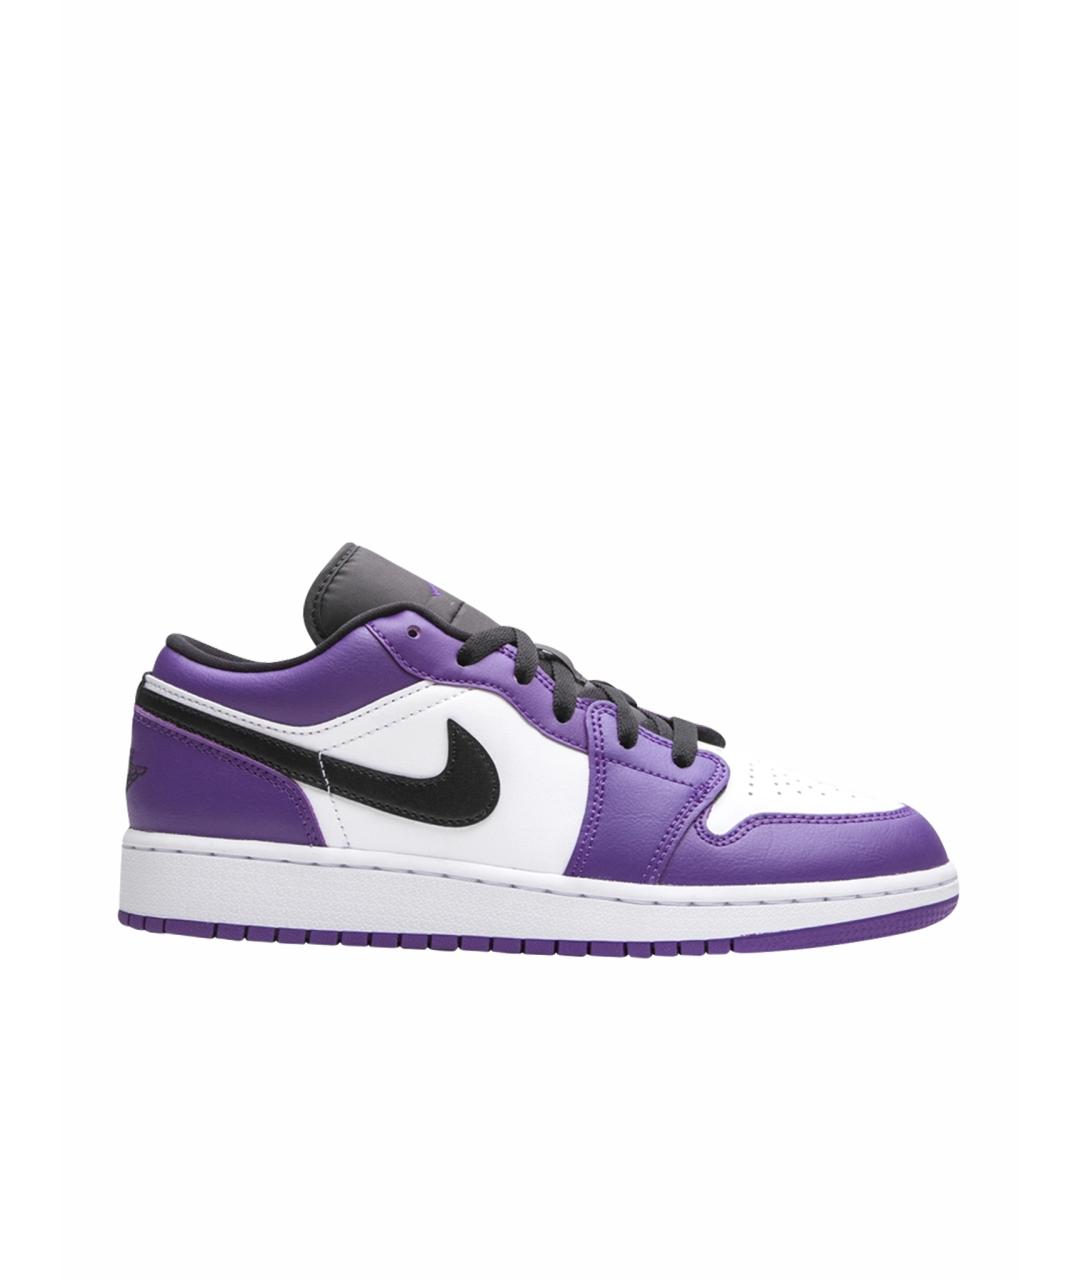 JORDAN Фиолетовые кроссовки из искусственной кожи, фото 1